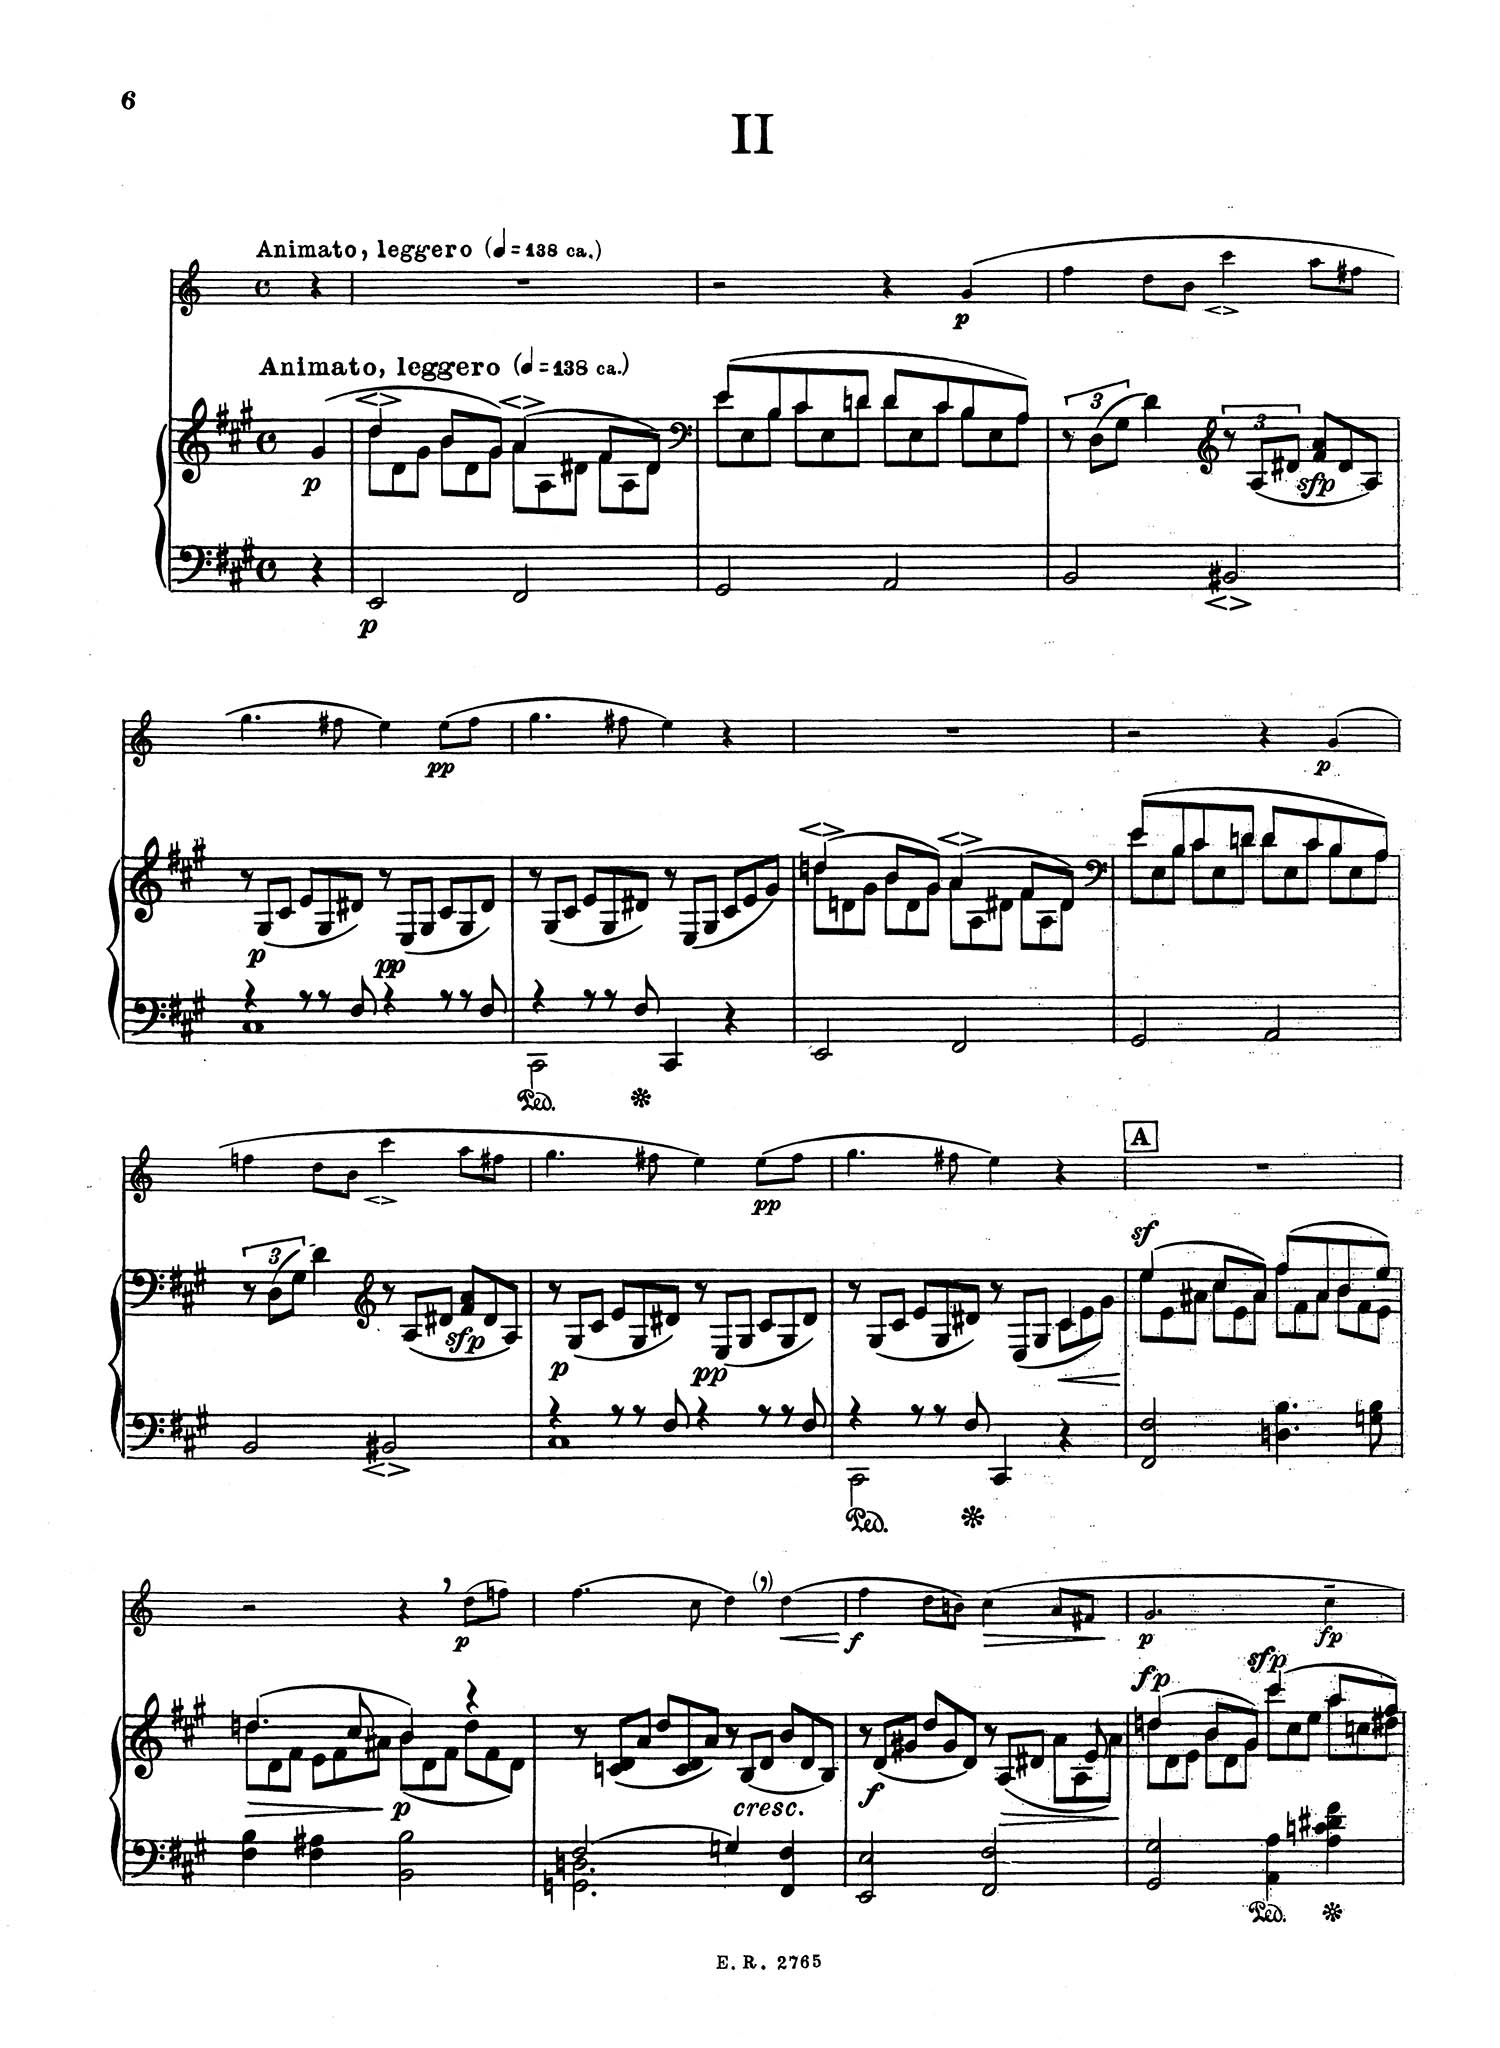 Fantasiestücke, Op.73 - Movement 2